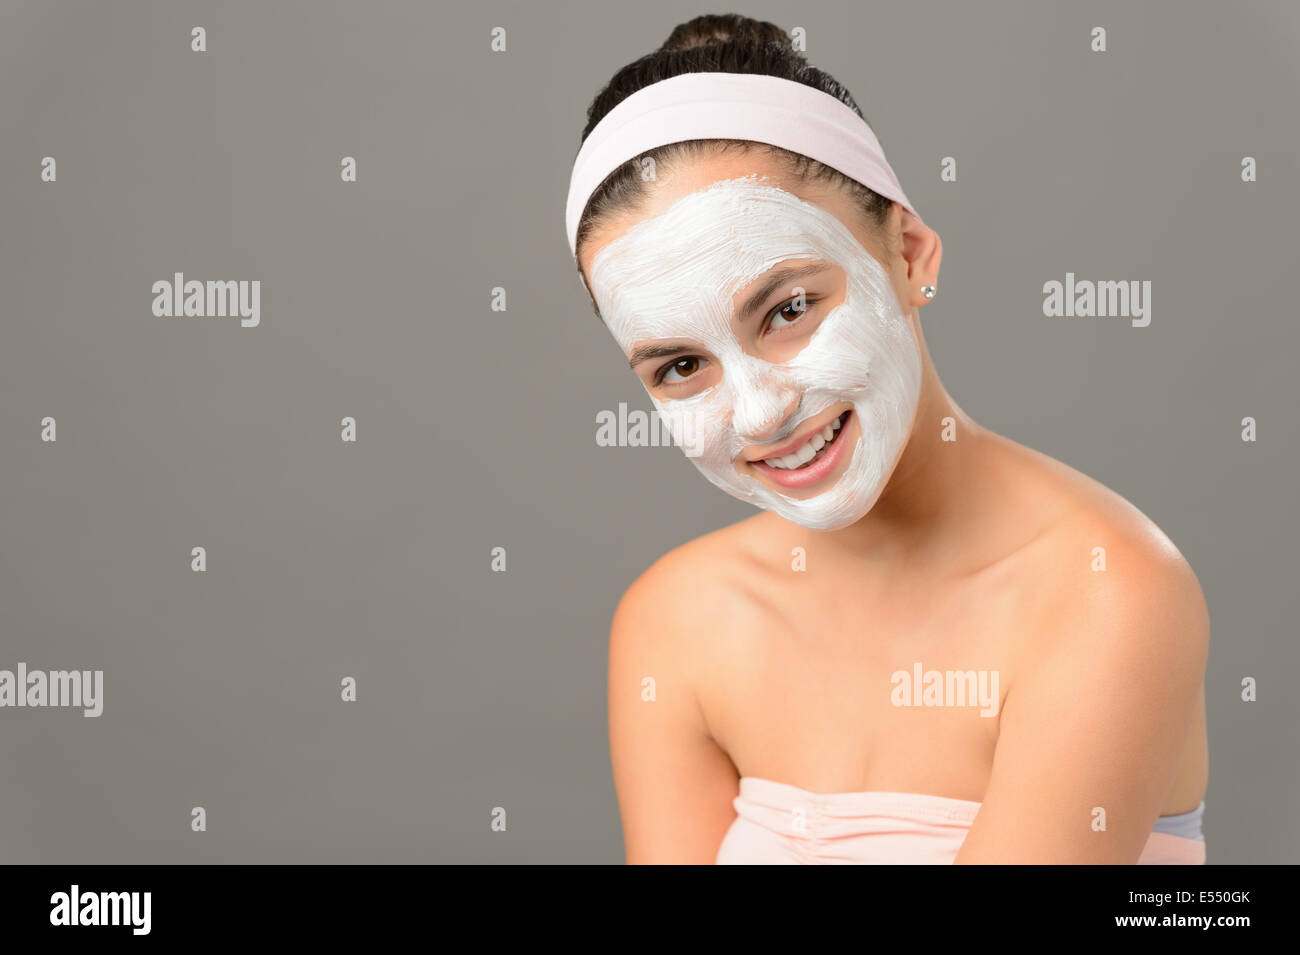 Sorridente ragazza adolescente maschera cosmetici bellezza della pelle su sfondo grigio Foto Stock